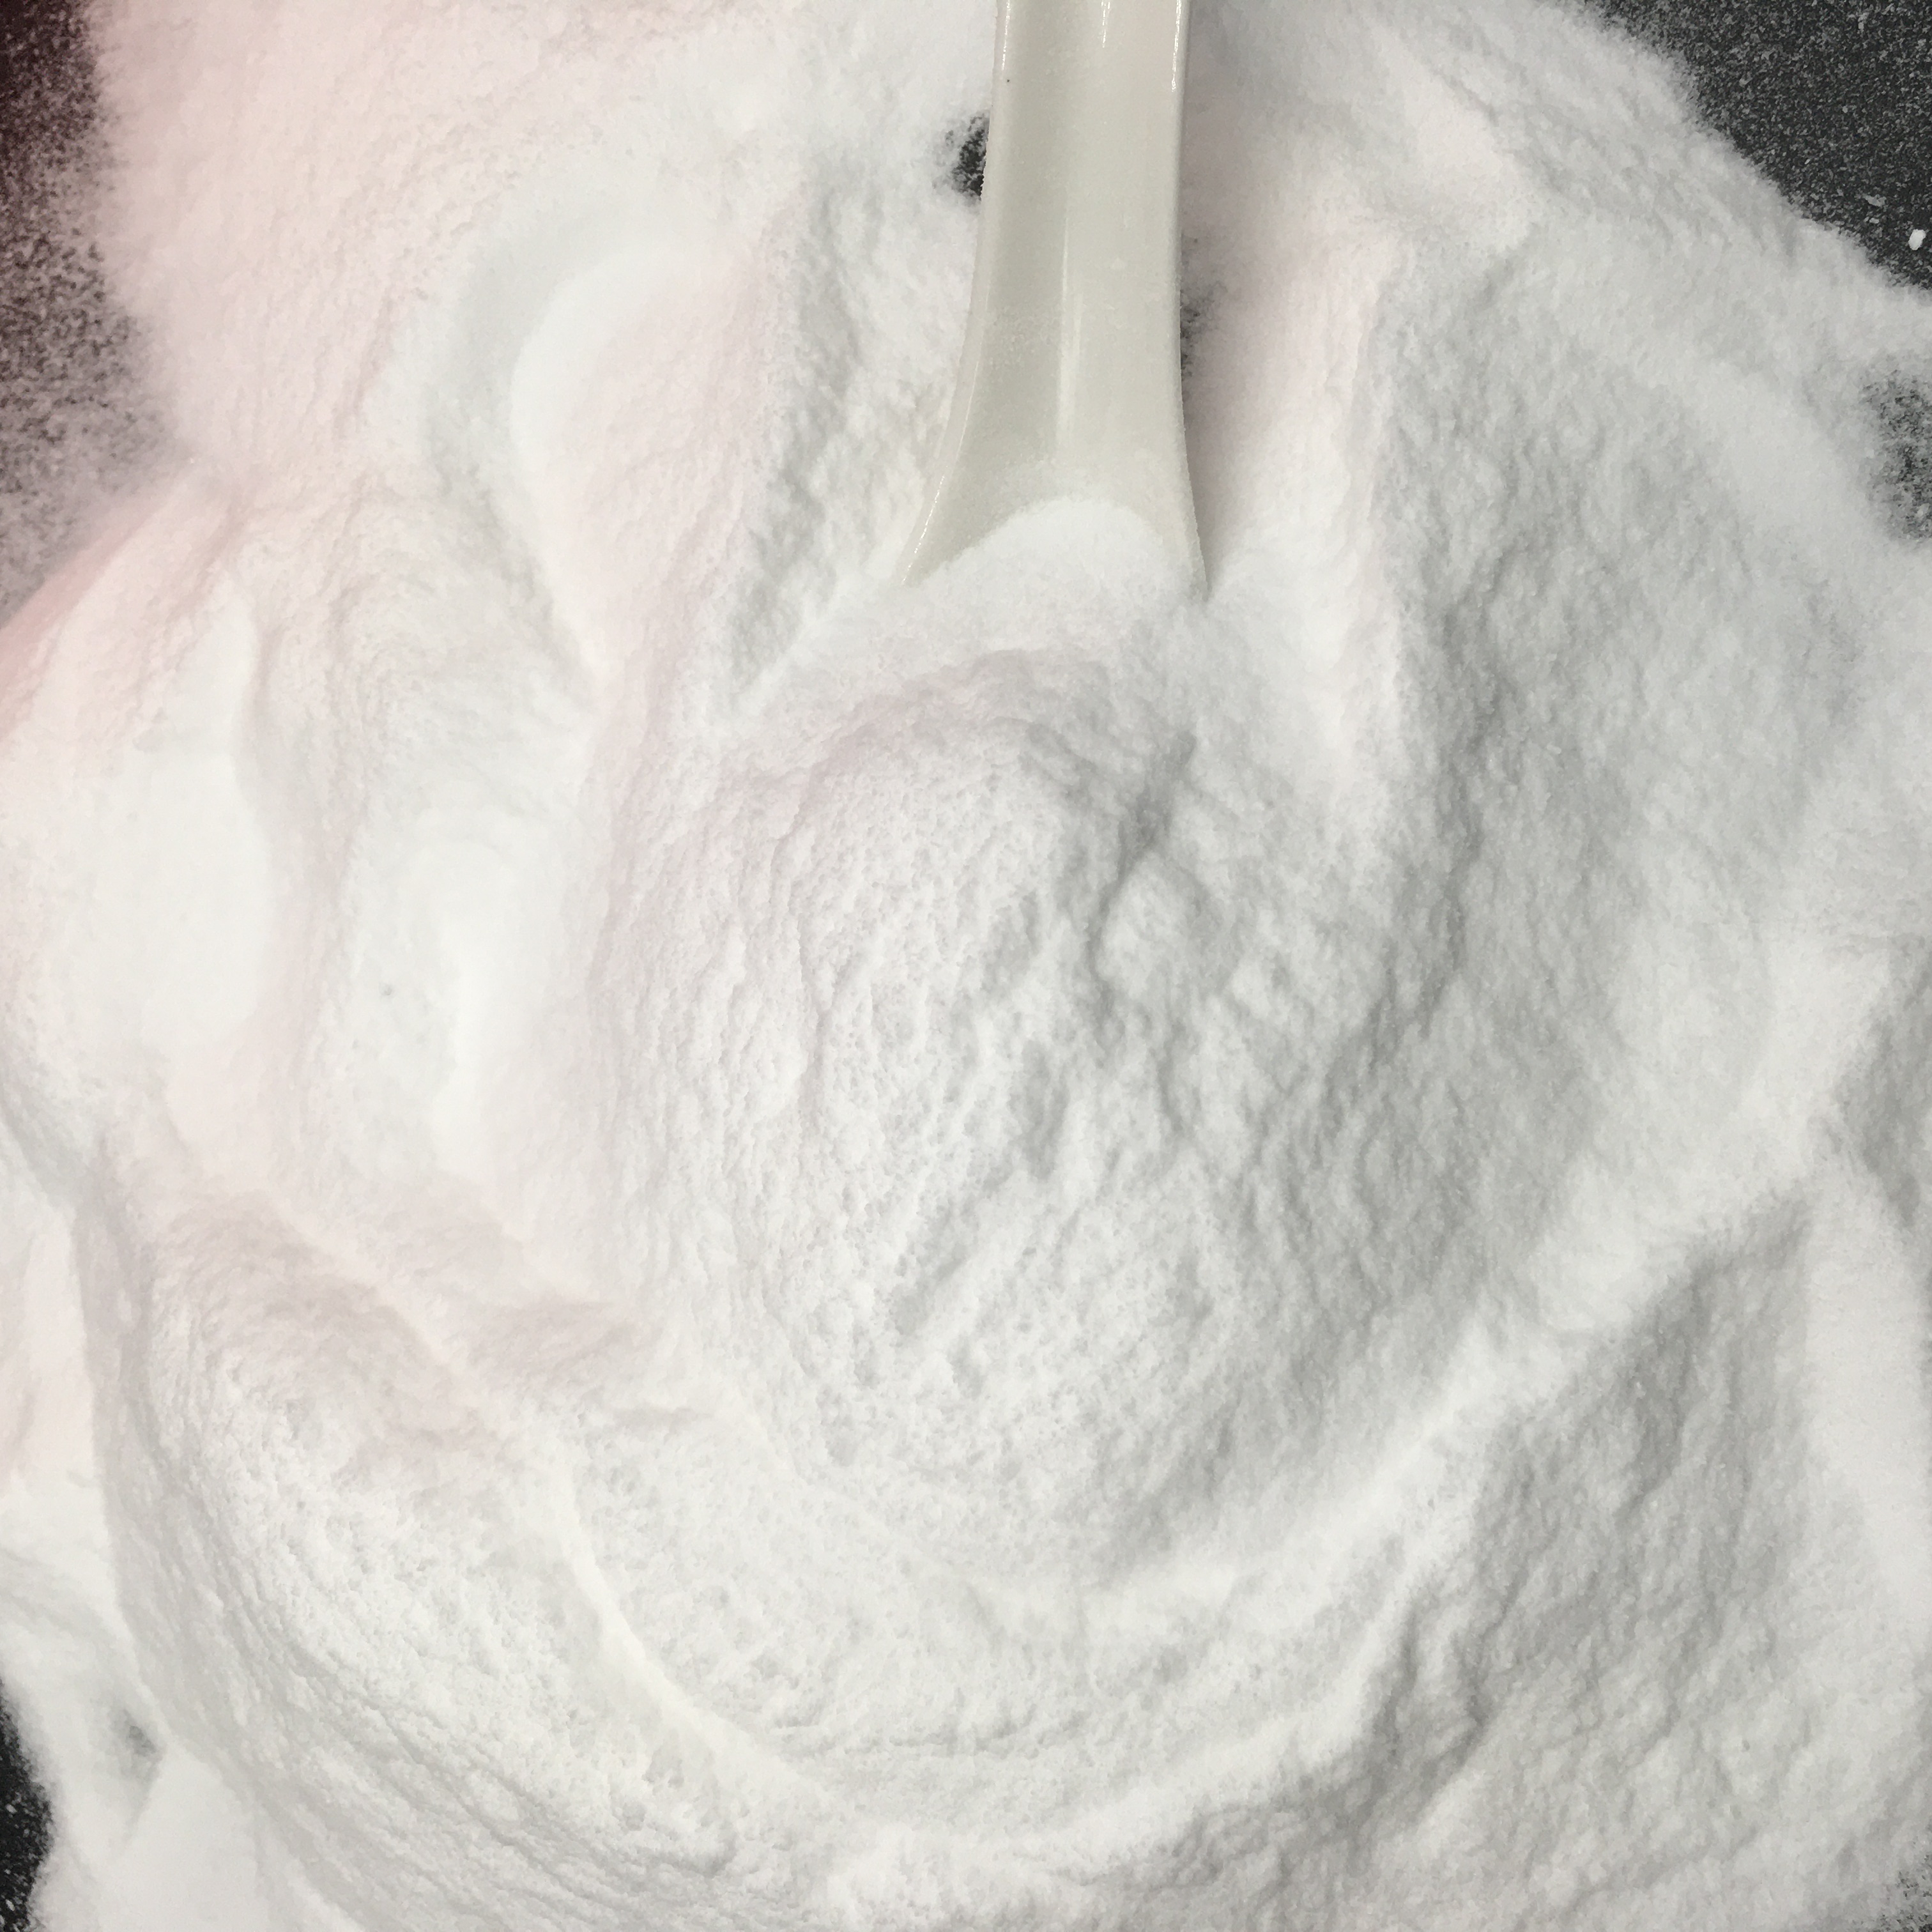 Dextrose Granel 25kg Grau Alimentício Dextrose Glucose Baixo Preço Dextrose Monohidratado em Pó